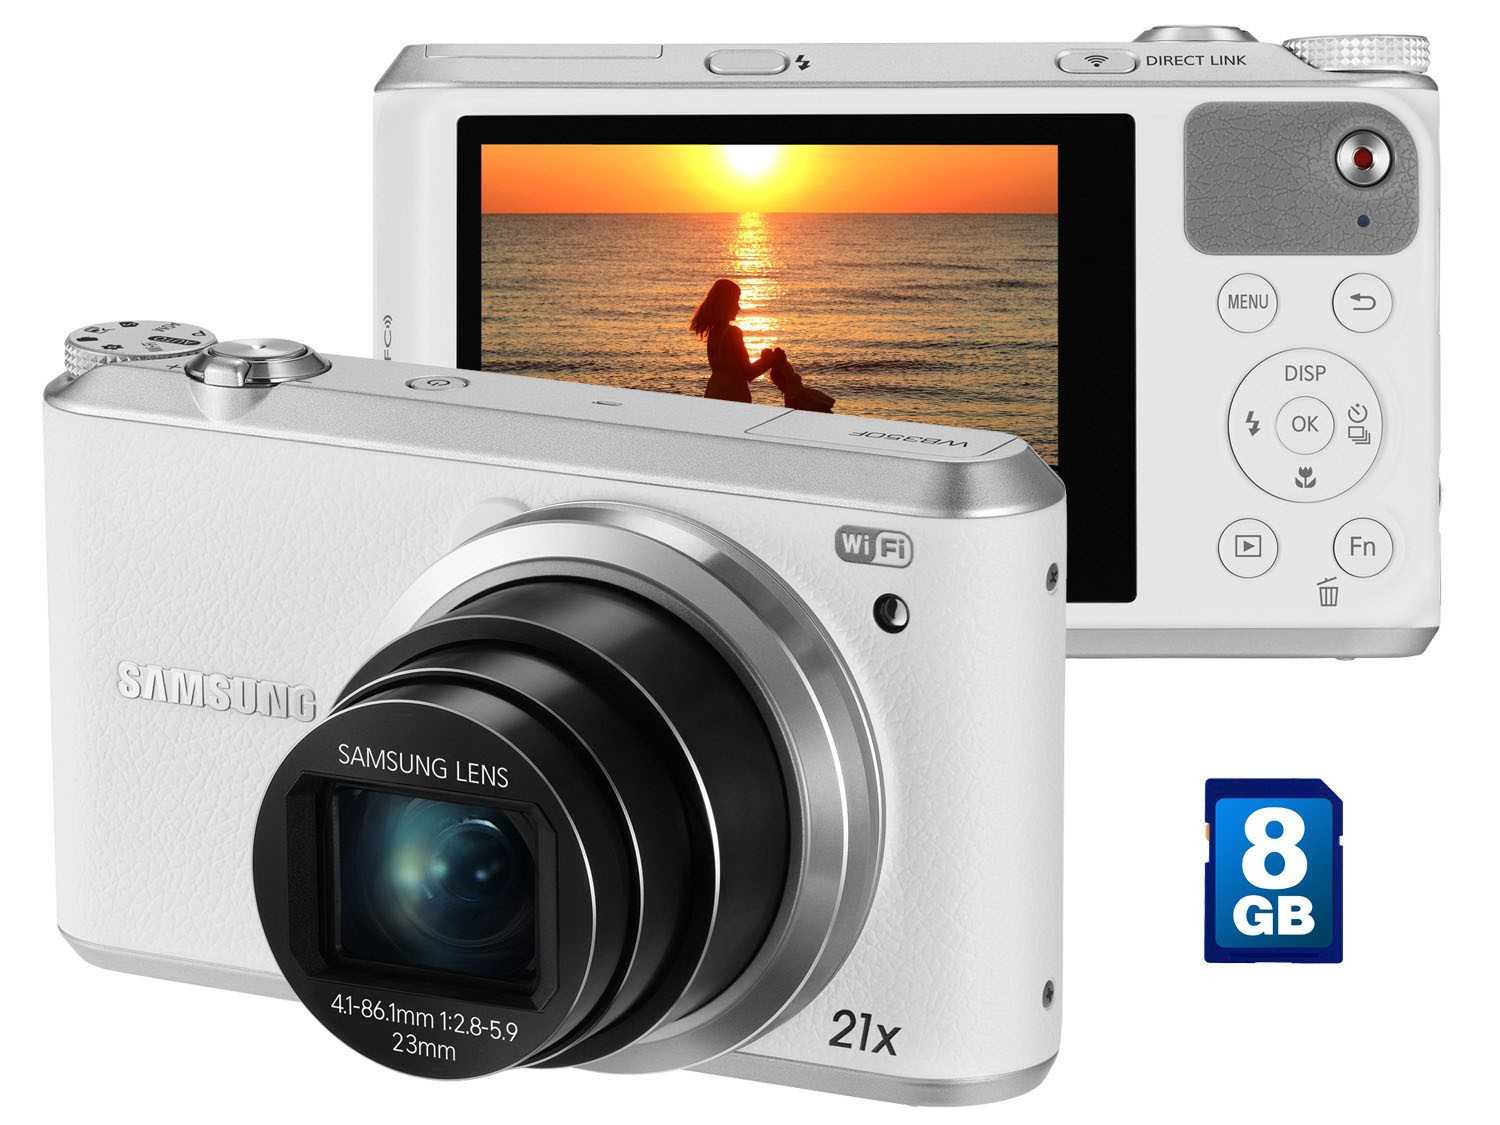 Samsung wb350f (синий) - купить , скидки, цена, отзывы, обзор, характеристики - фотоаппараты цифровые